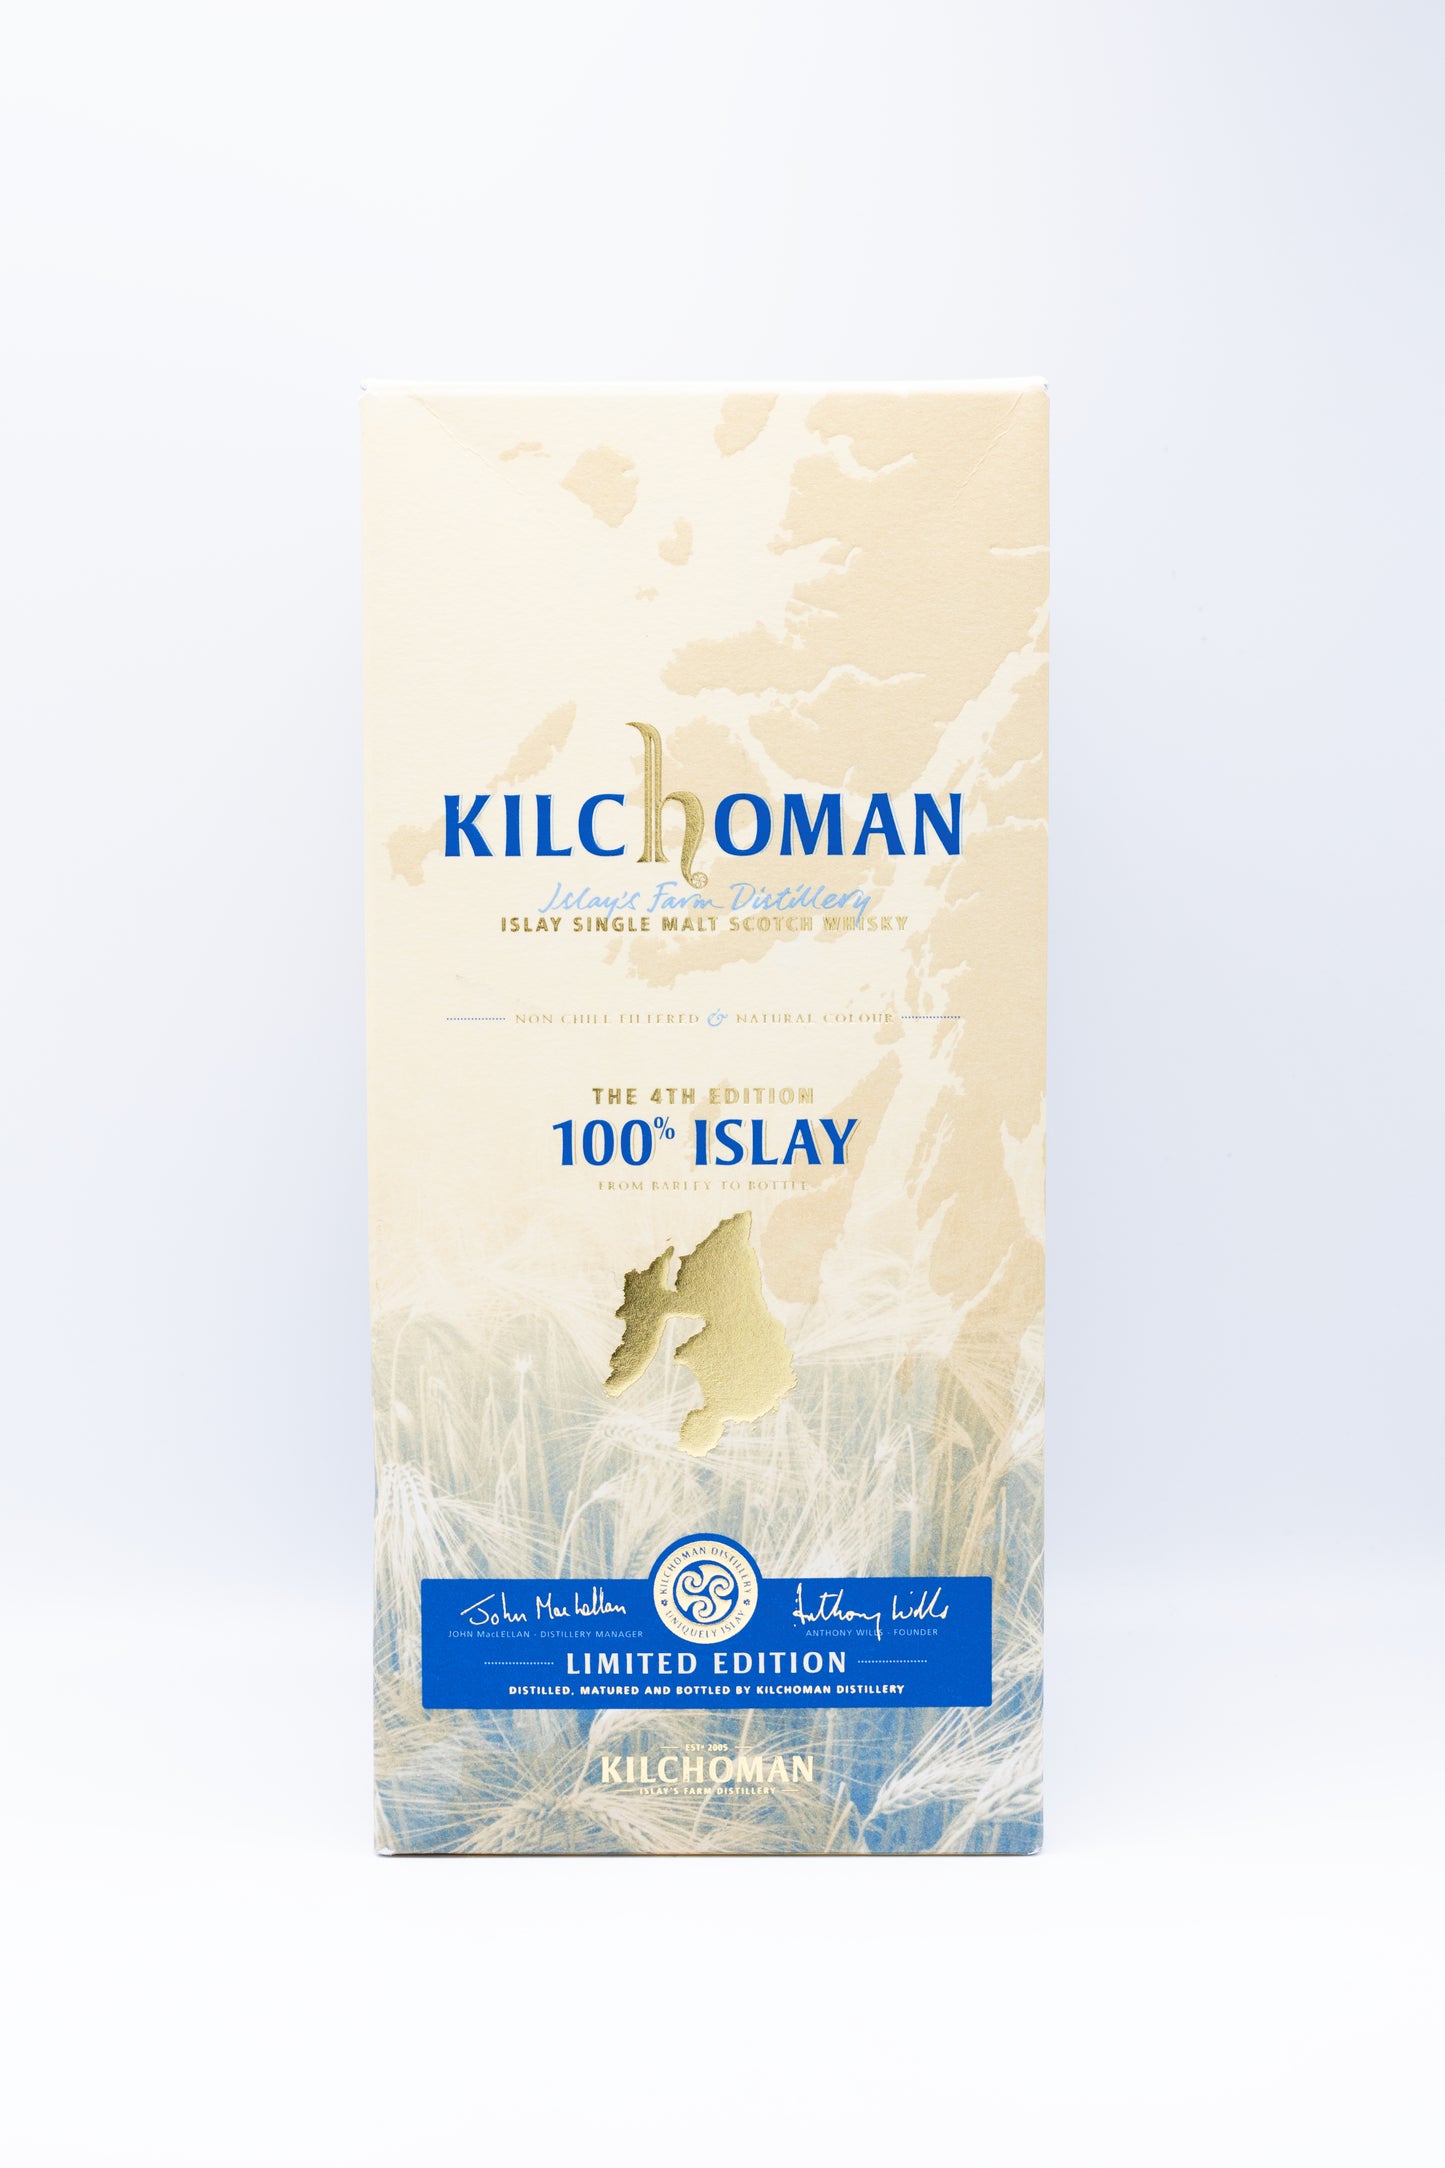 Kilchoman 100% Islay 4th Edition